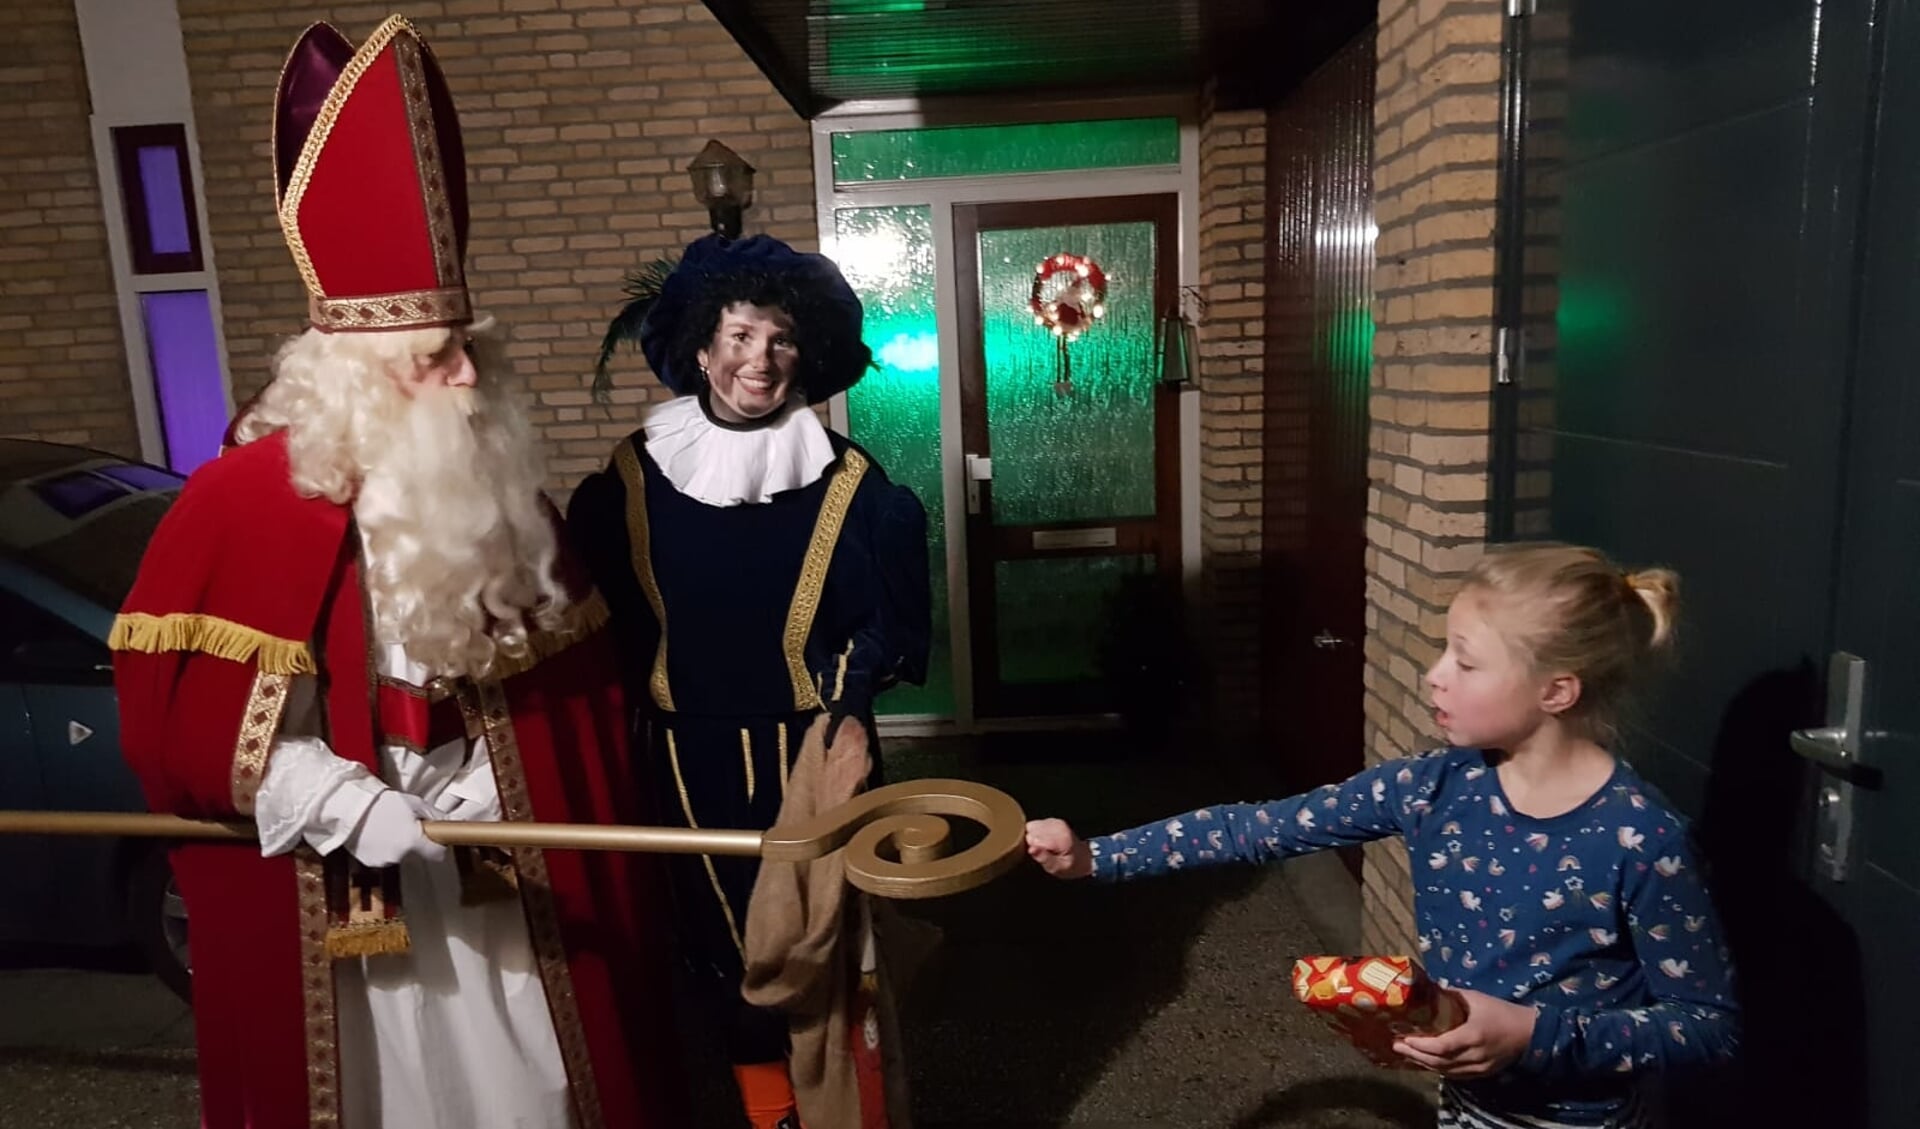 Jente heeft haar kadootje in ontvangst genomen van Sinterklaas